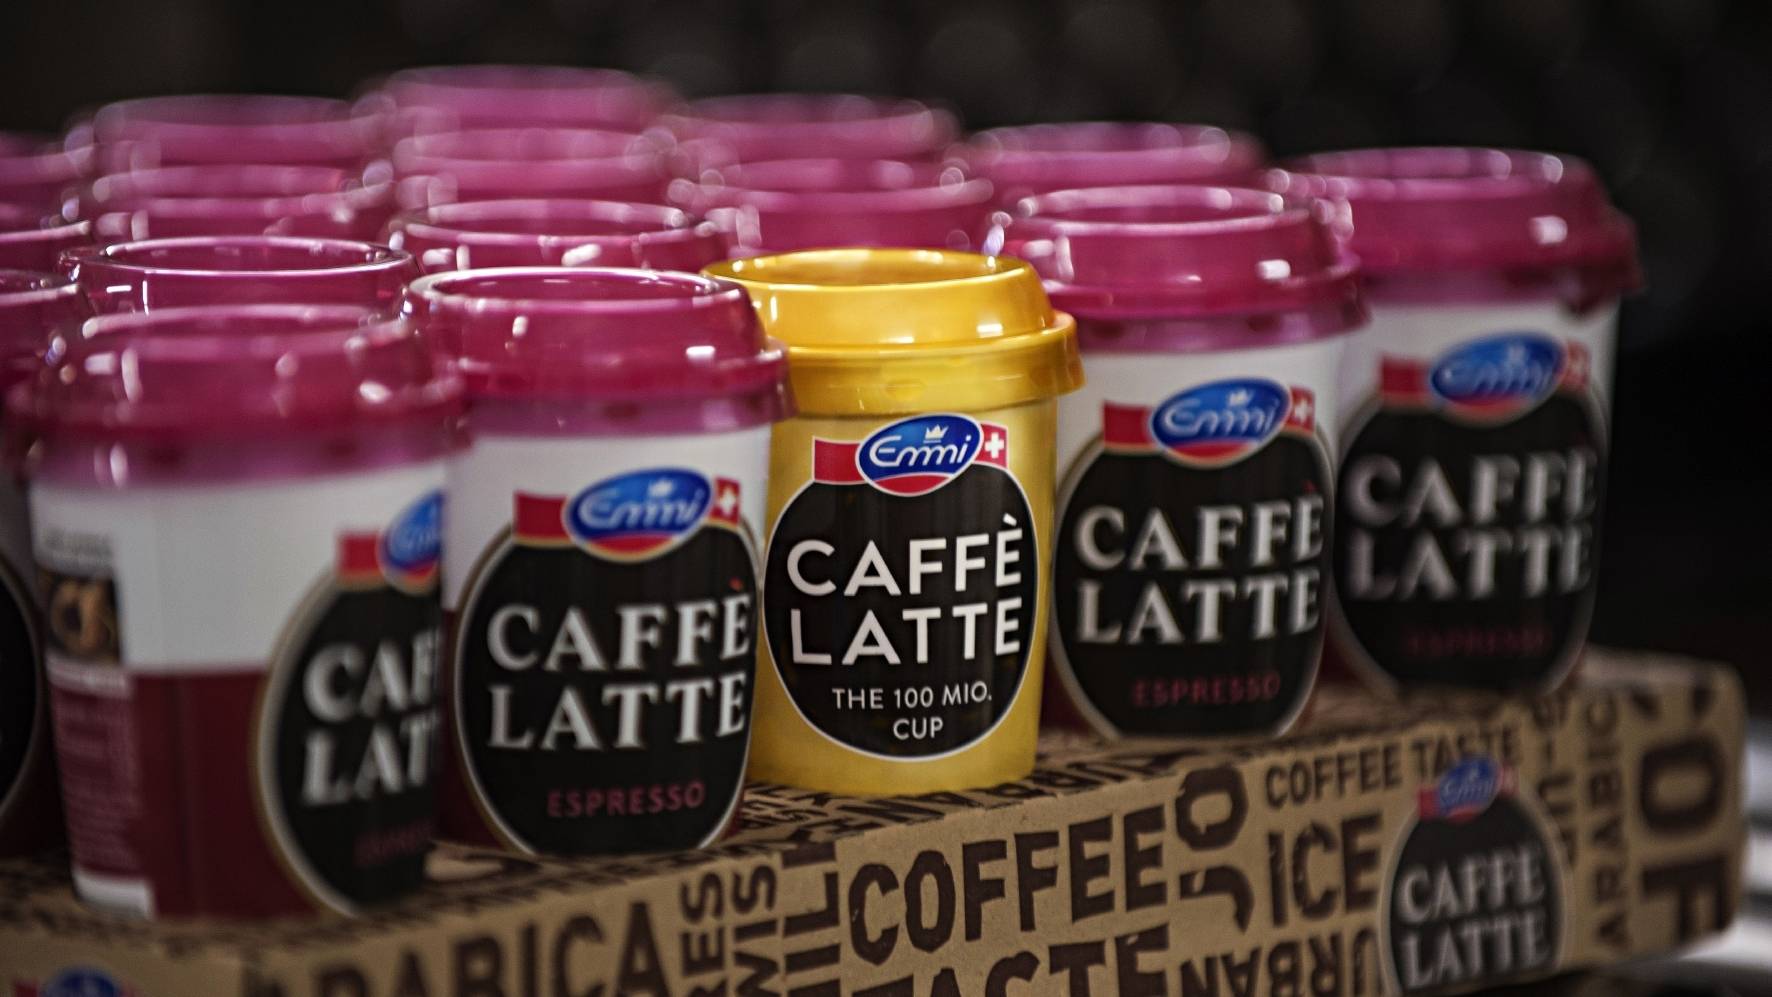 Emmi verkauft mehr Caffè Latte und Ziegenkäse